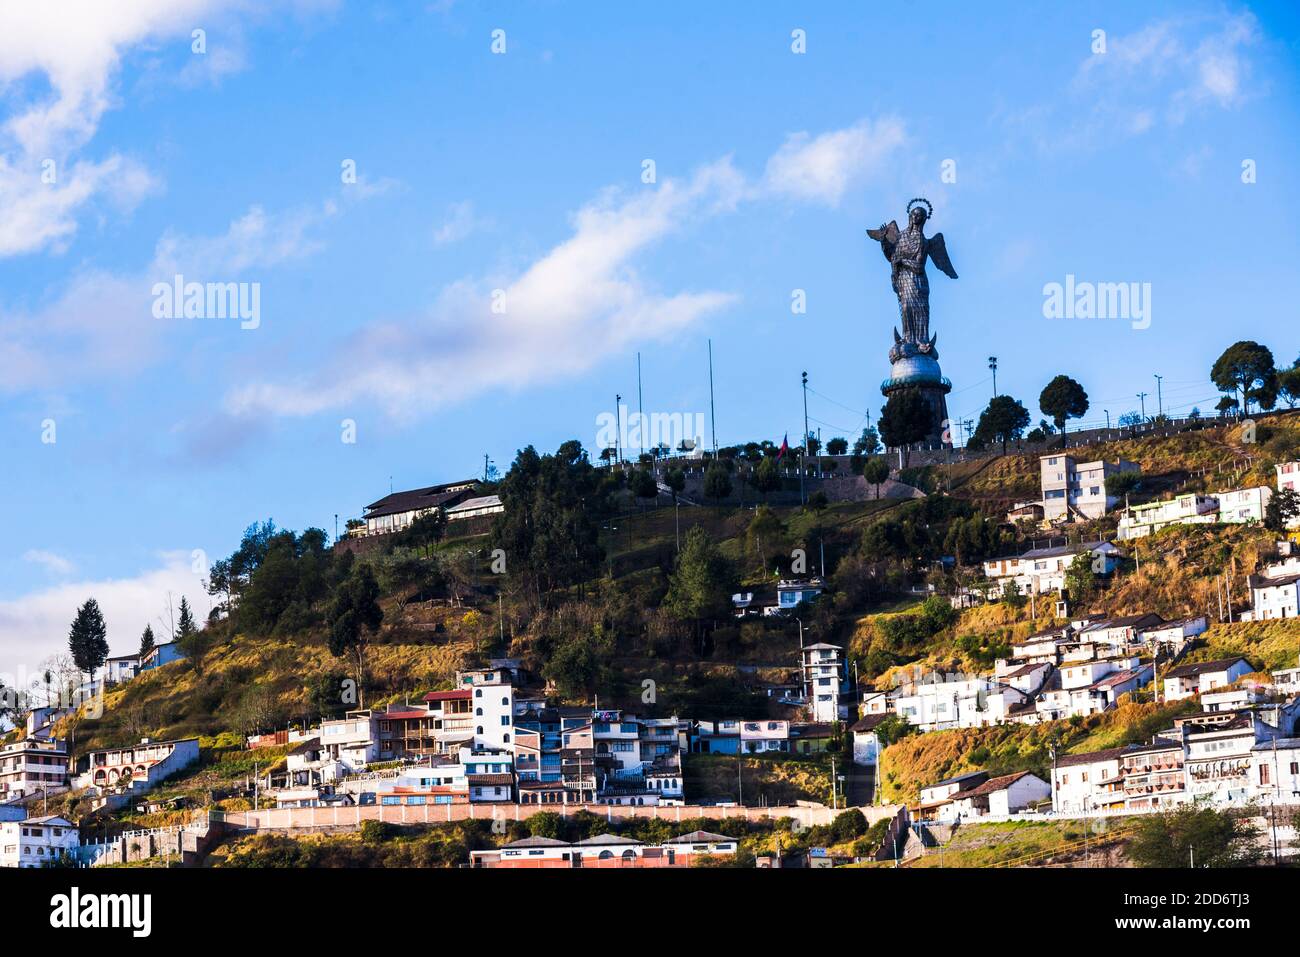 Statue de la Vierge de Quito, statue d'El Panecillo Hill, ville de Quito, Équateur, Amérique du Sud Banque D'Images